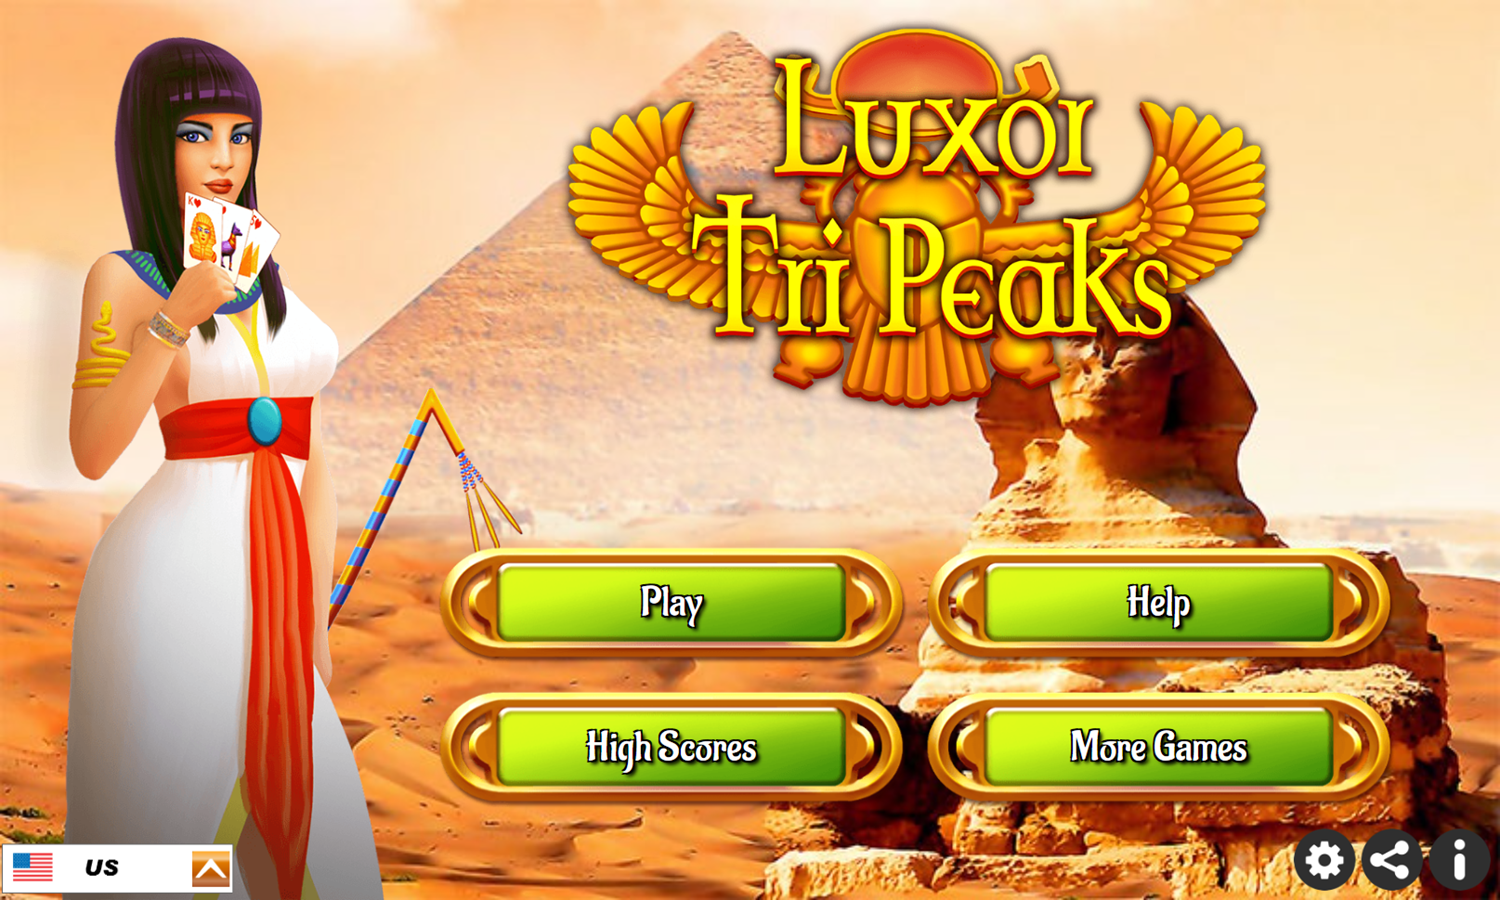 Luxor Tripeaks Game Welcome Screen Screenshot.